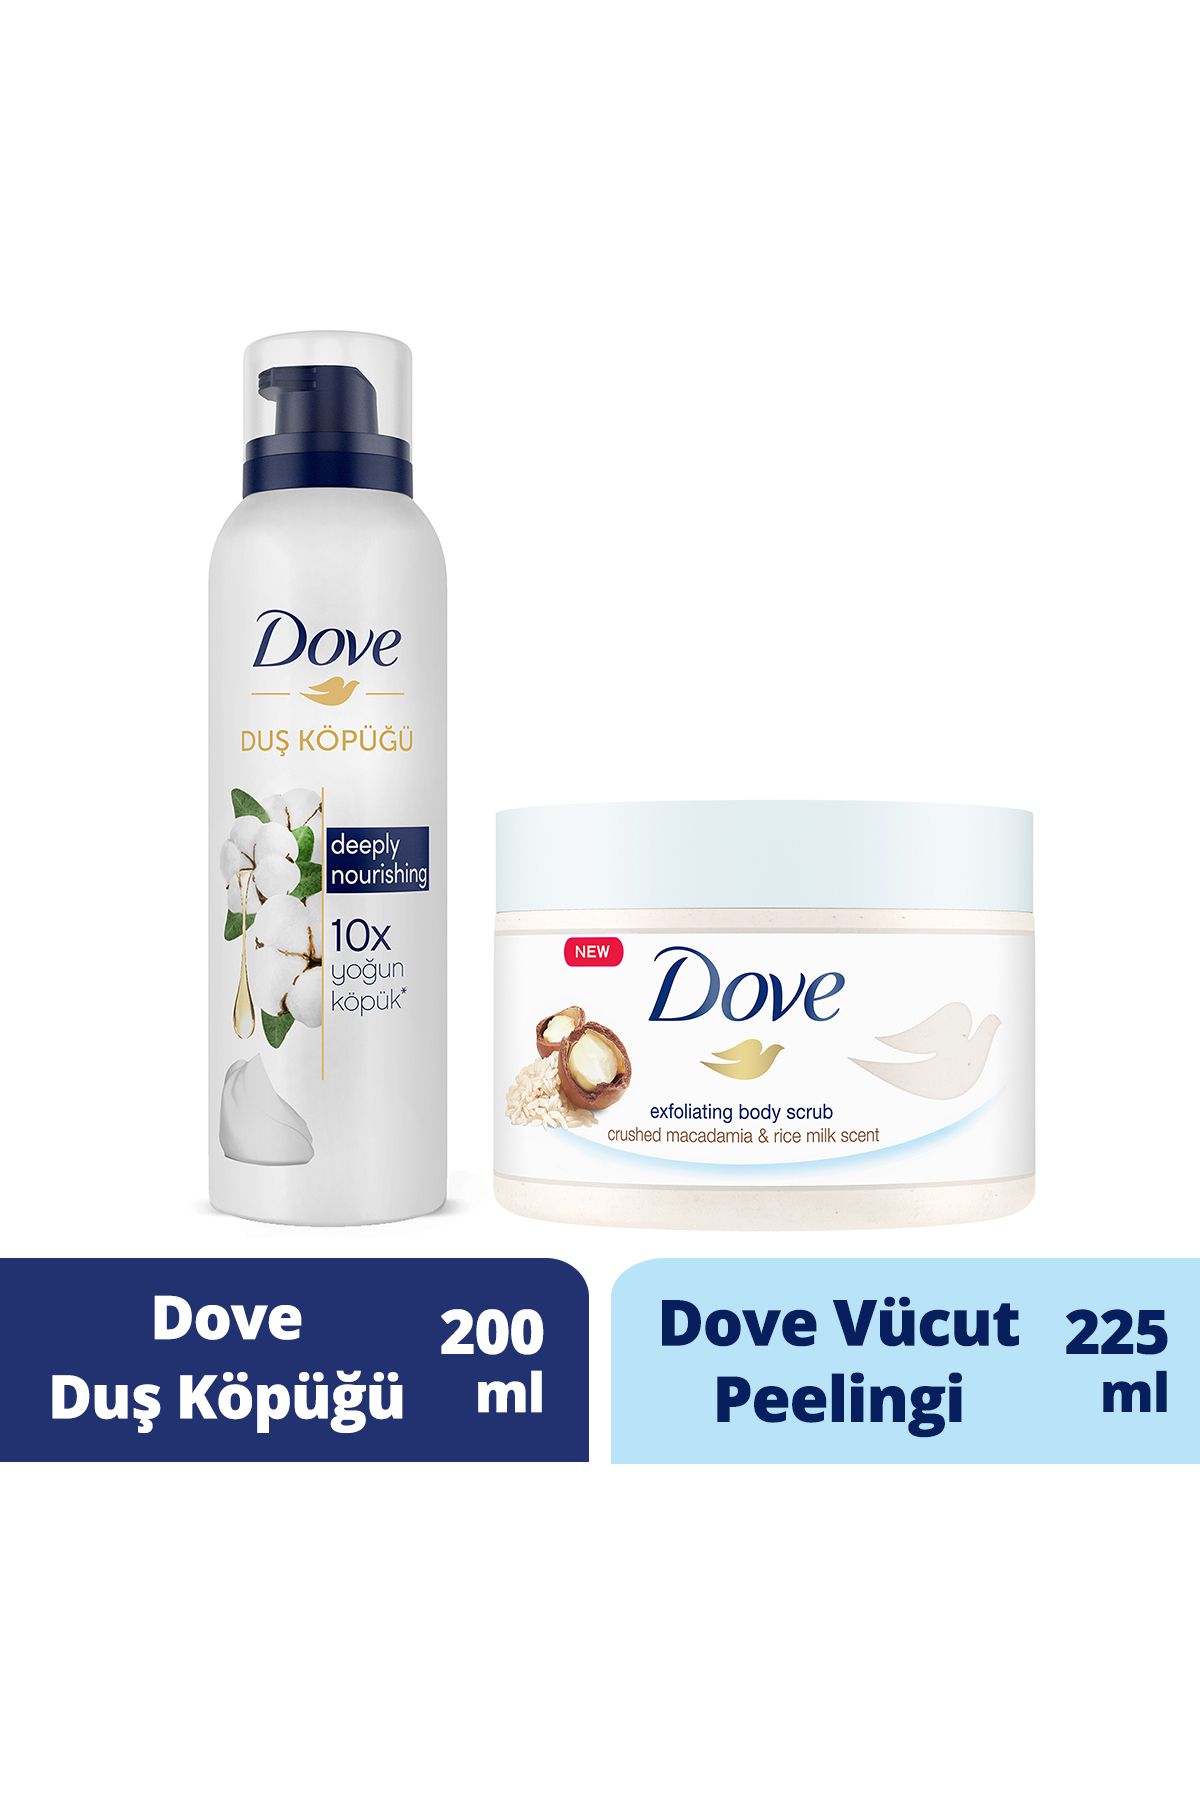 Dove Vücut Peelingi Macademia Fındığı Ve Pirinç Sütü 225ml Duş Köpüğü Depply Nourishing 200ml